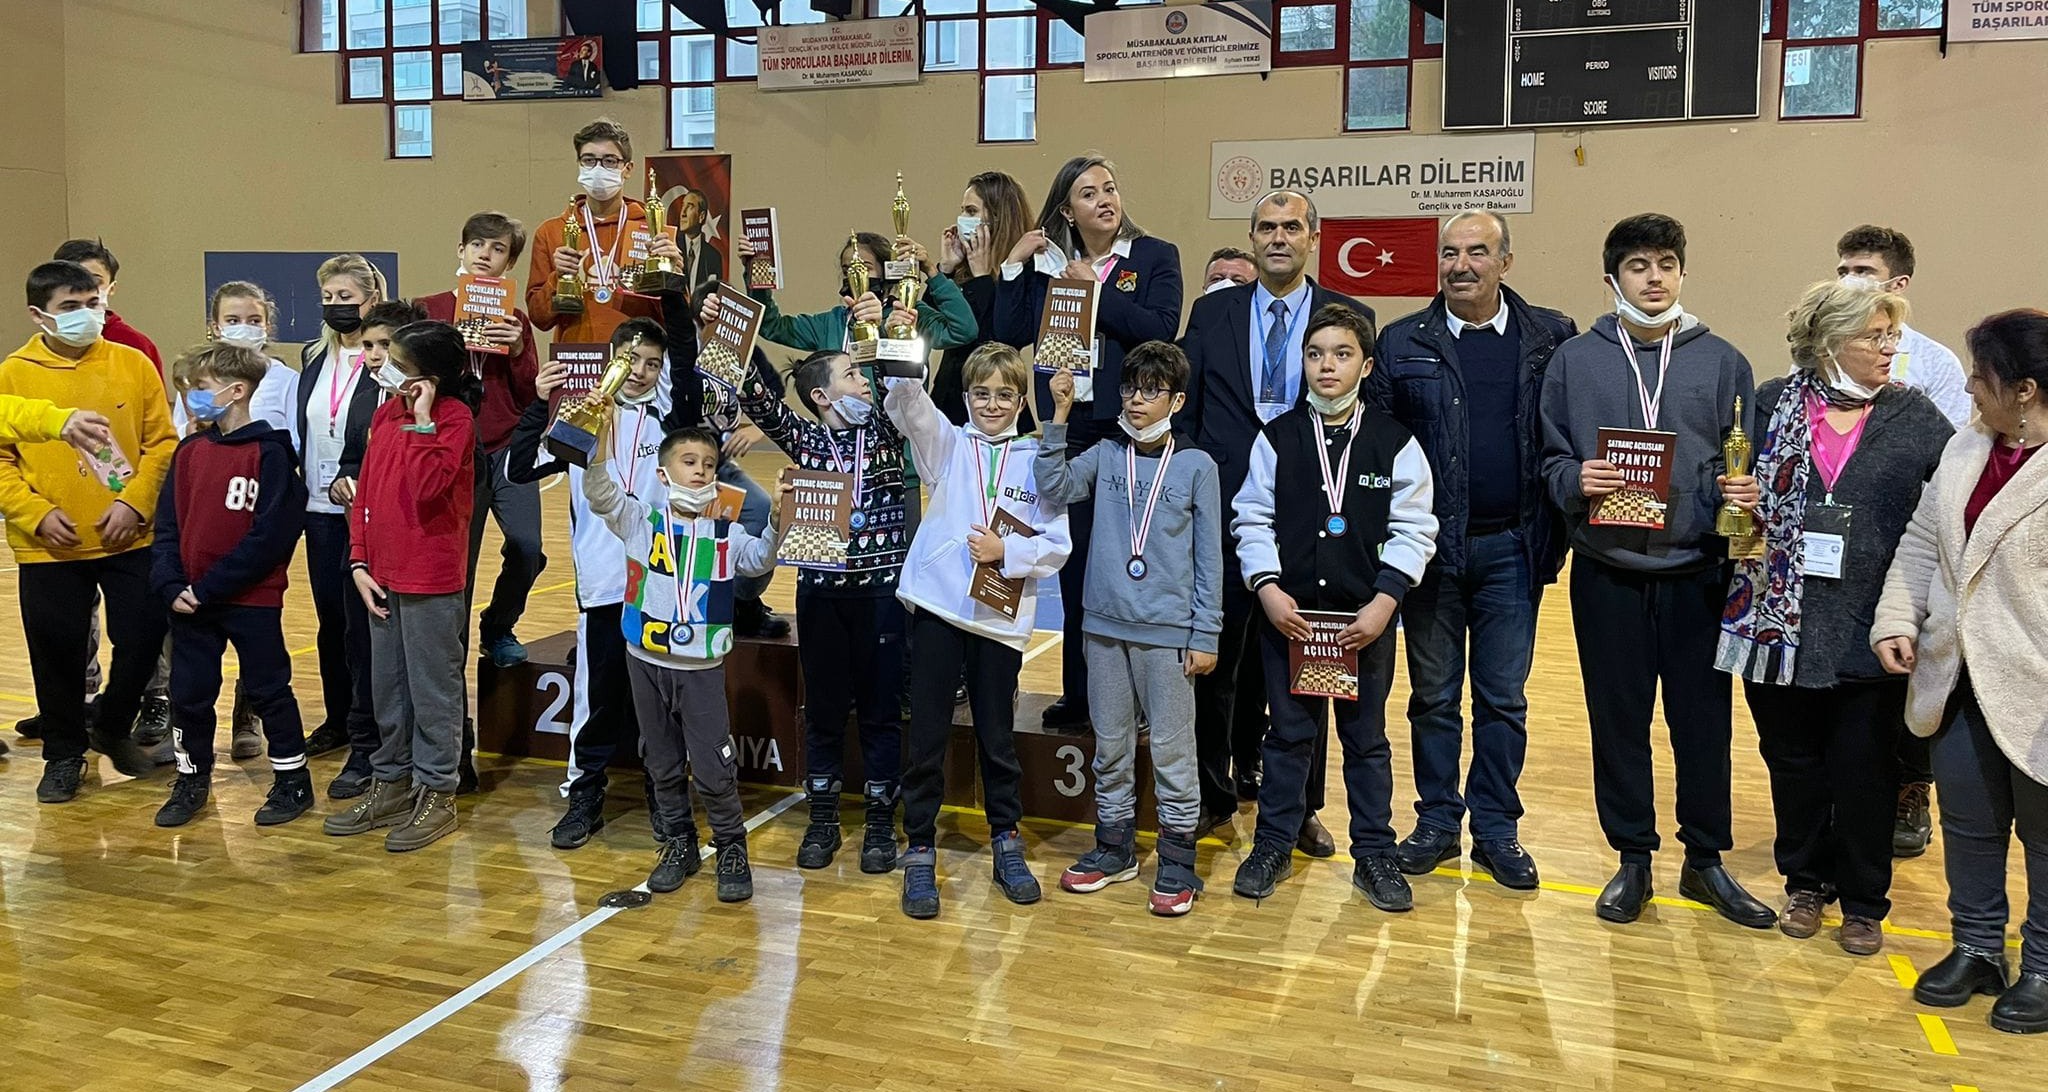 Mudanya 15 Yaş ve Altı Satranç Turnuvası